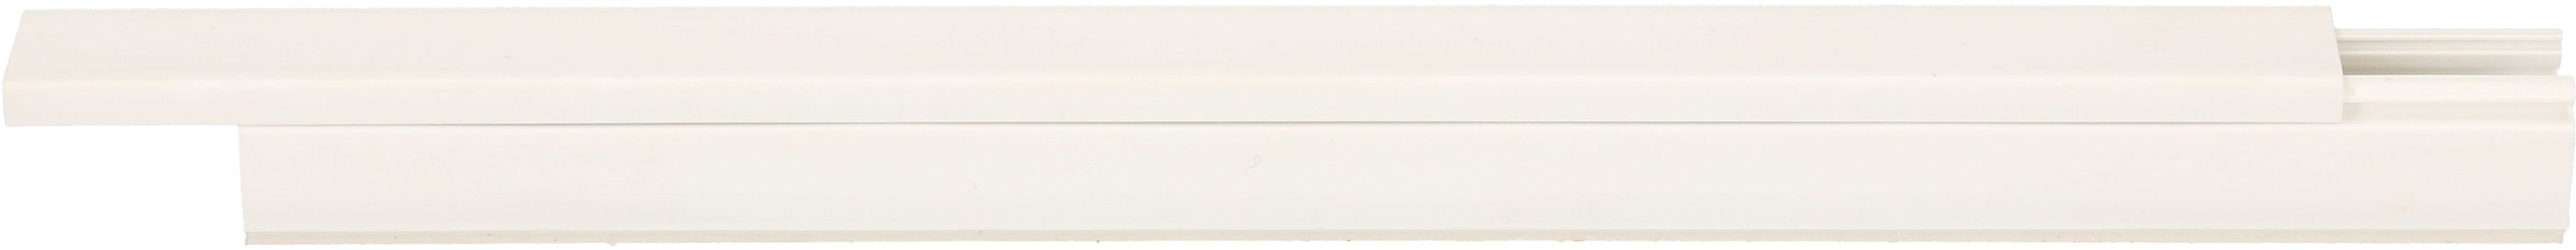 Goulotte 16x16mm blanc auto-adhésif 2m